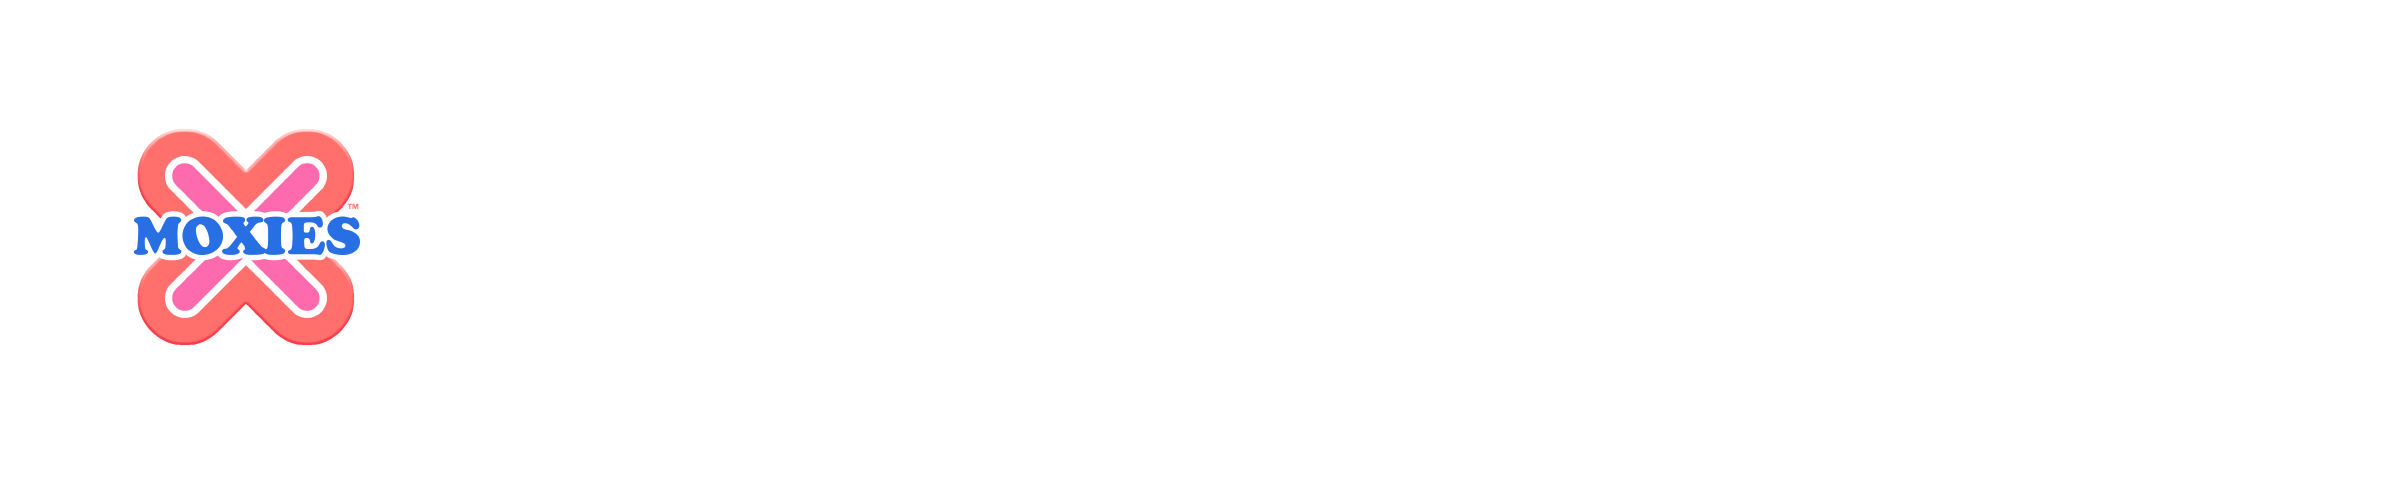 Miss O Cool Girls Logo